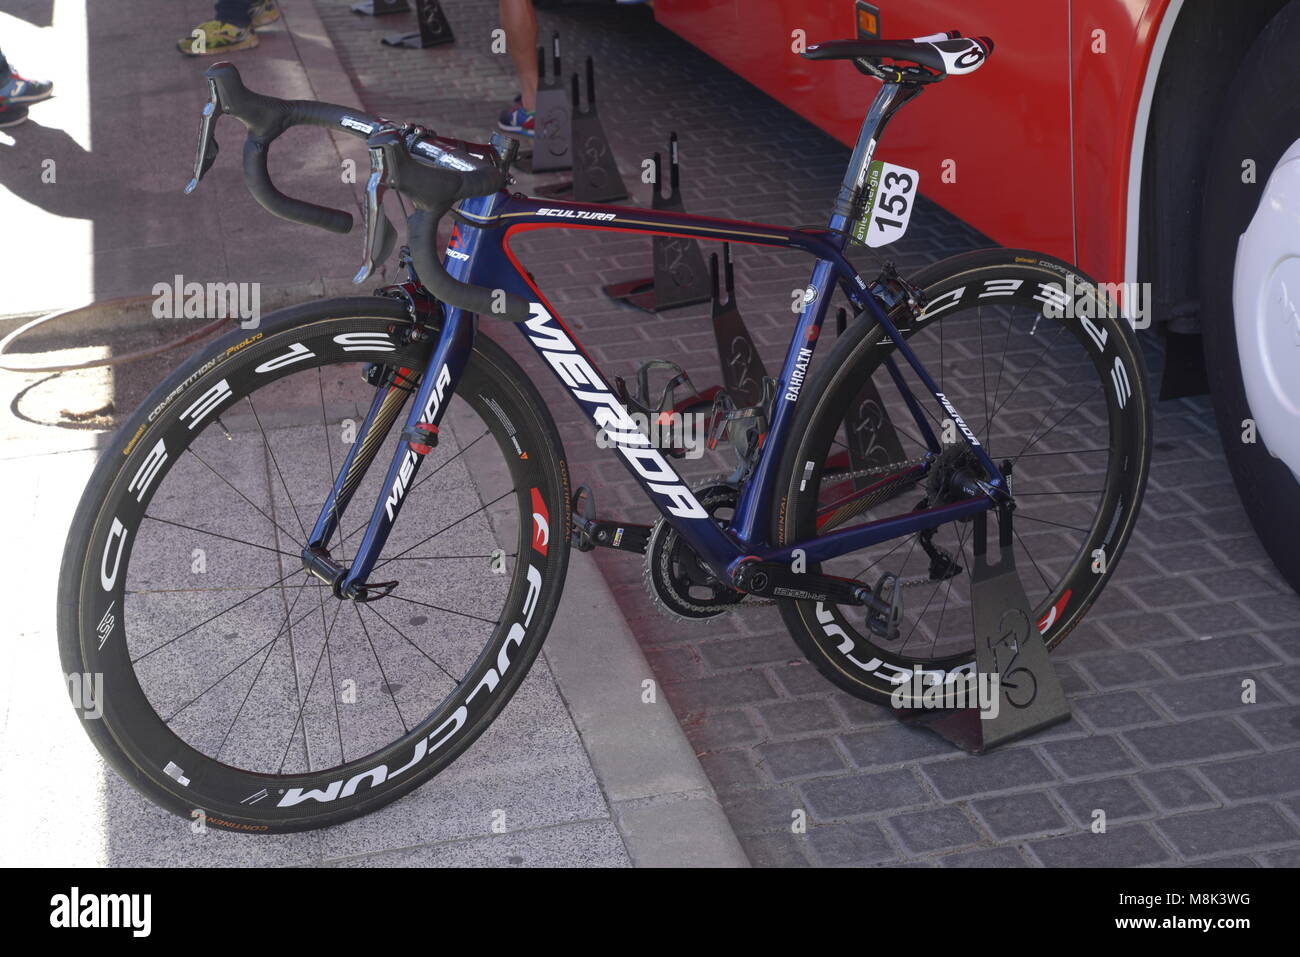 Immagine di Merida professional bike dal team Katusha utilizzato in la Vuelta, Spagna. Foto Stock